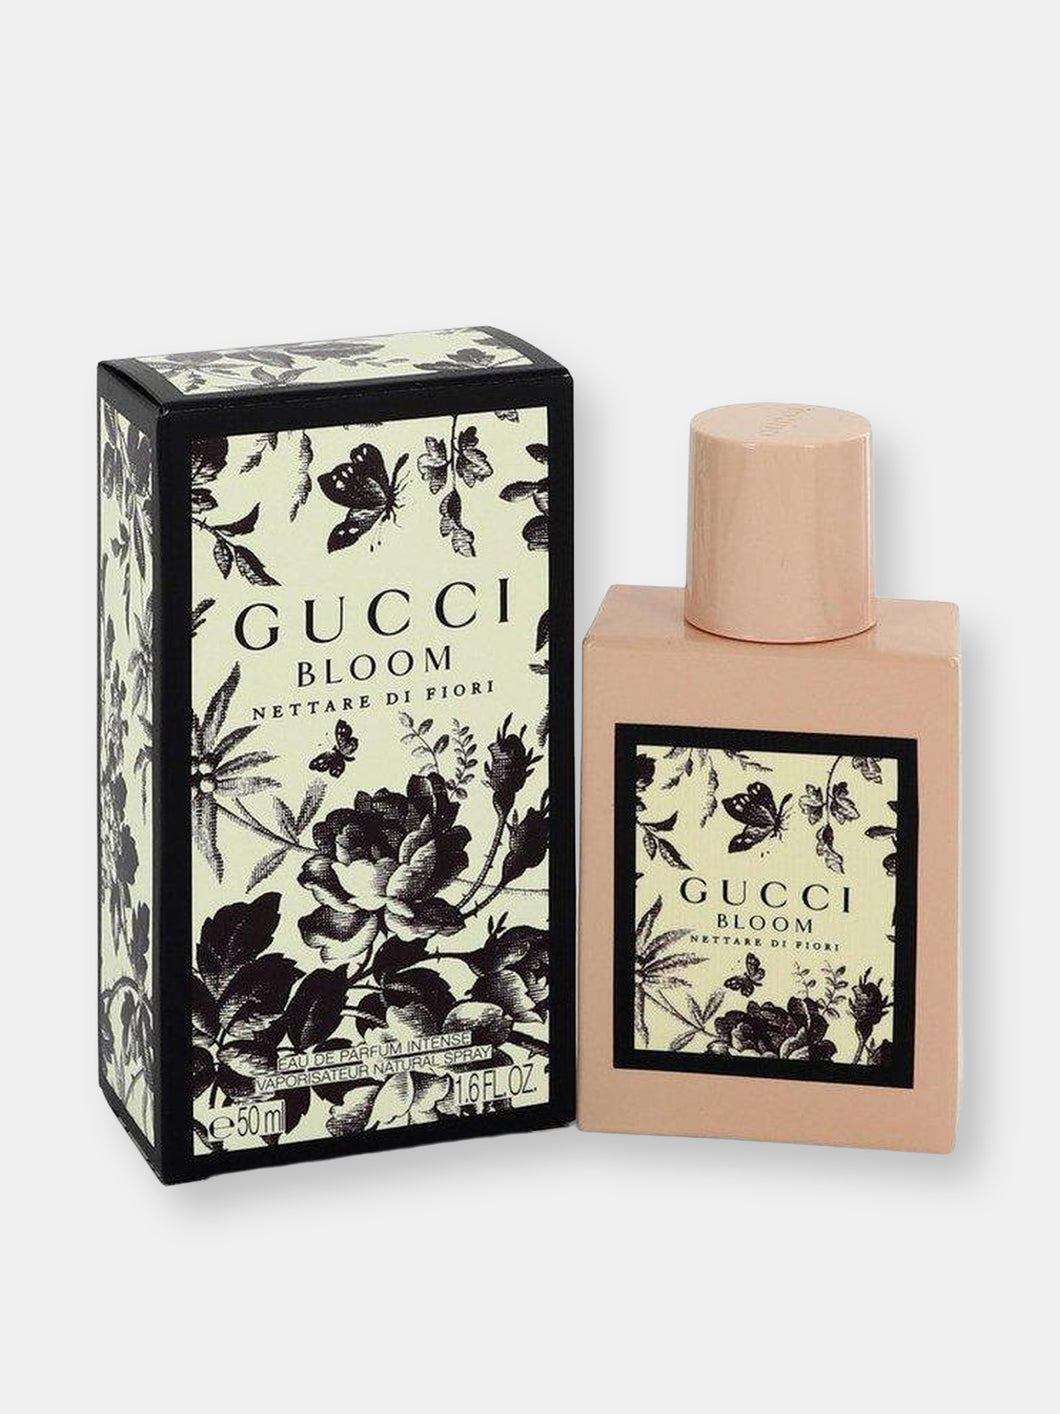 Gucci Bloom Nettare di Fiori by Gucci Eau De Parfum Intense Spray 1.7 oz